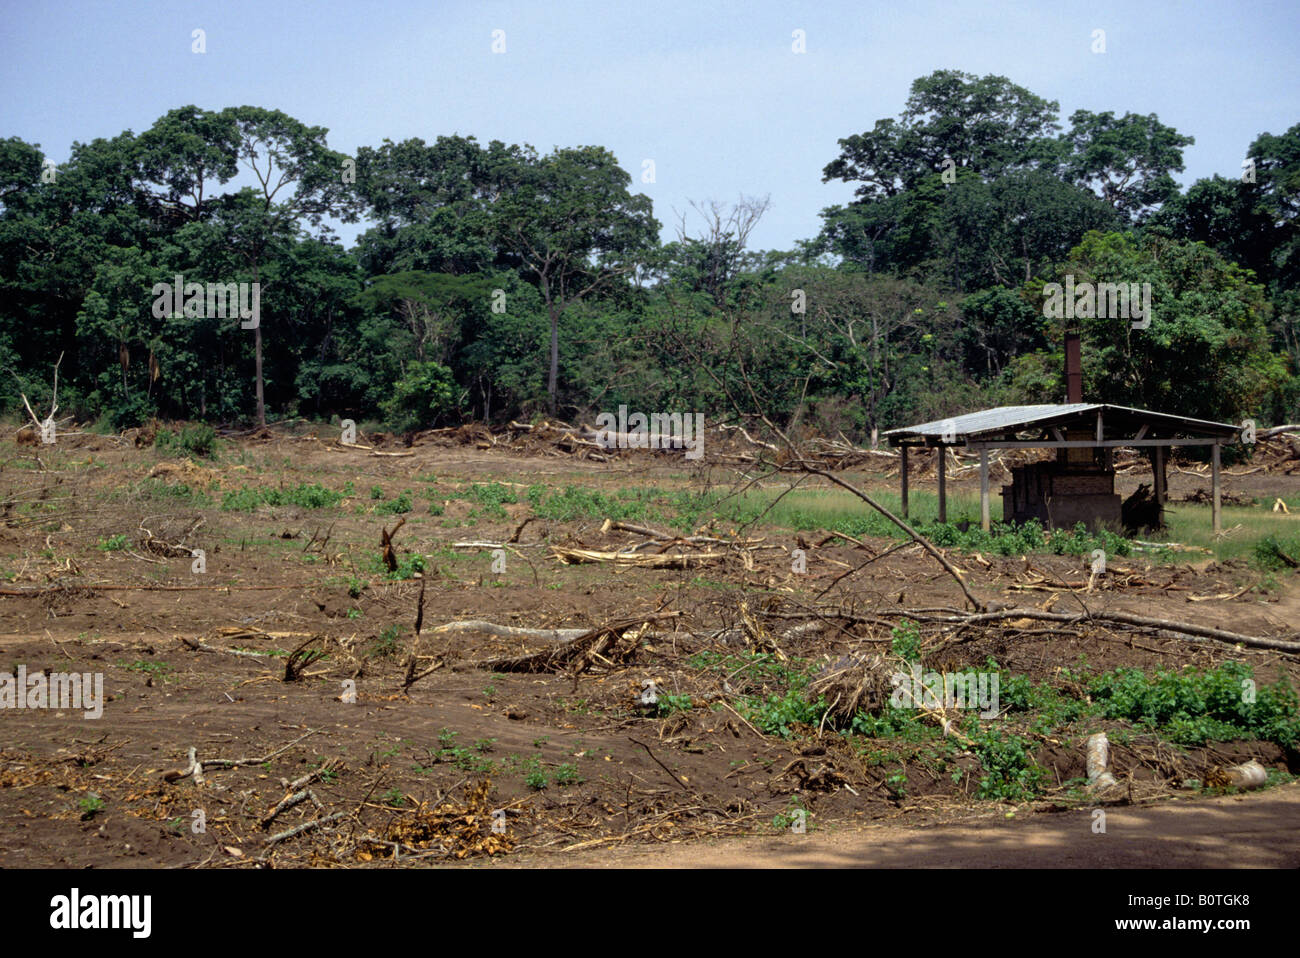 Ouassou, Central Costa d'Avorio, Costa d'Avorio, l'Africa occidentale. La deforestazione per produrre carbone di legna per lavorazione ceramica forno sulla destra. Foto Stock